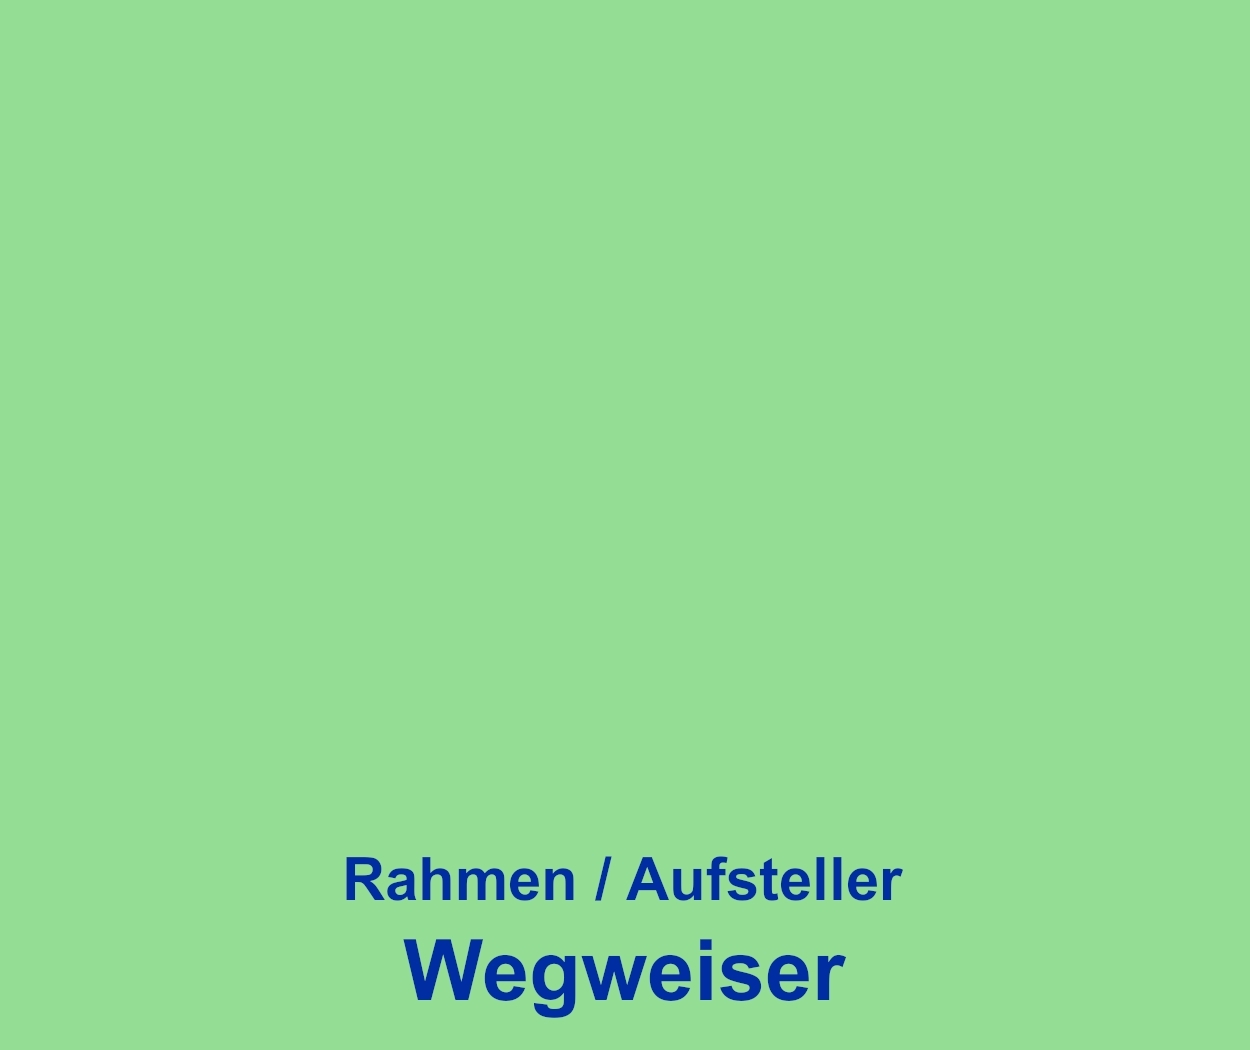 Start_H-L_R_Wegweiser-A1